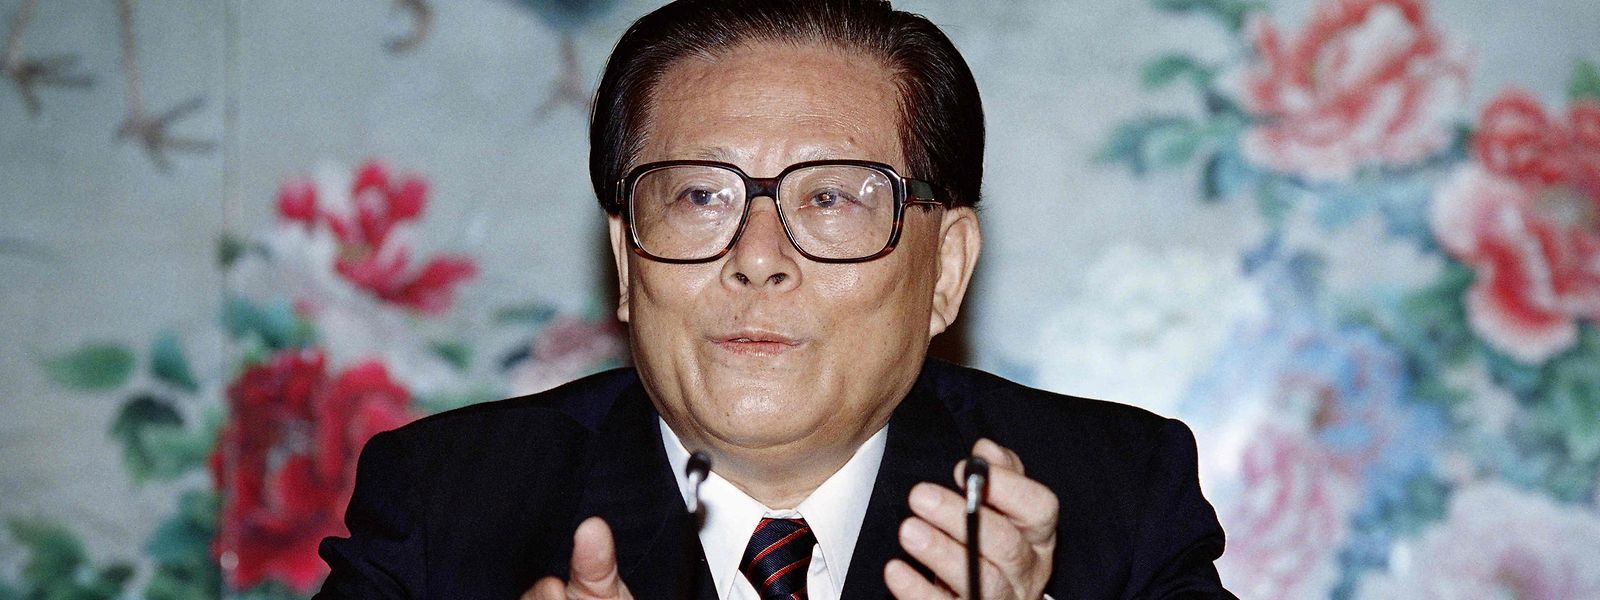 Jiang Zemin, Präsident von 1993 bis 2003, führte China durch den dramatischen wirtschaftlichen Wandel, der auf die Niederschlagung der Demokratiebewegung 1989 folgte. 